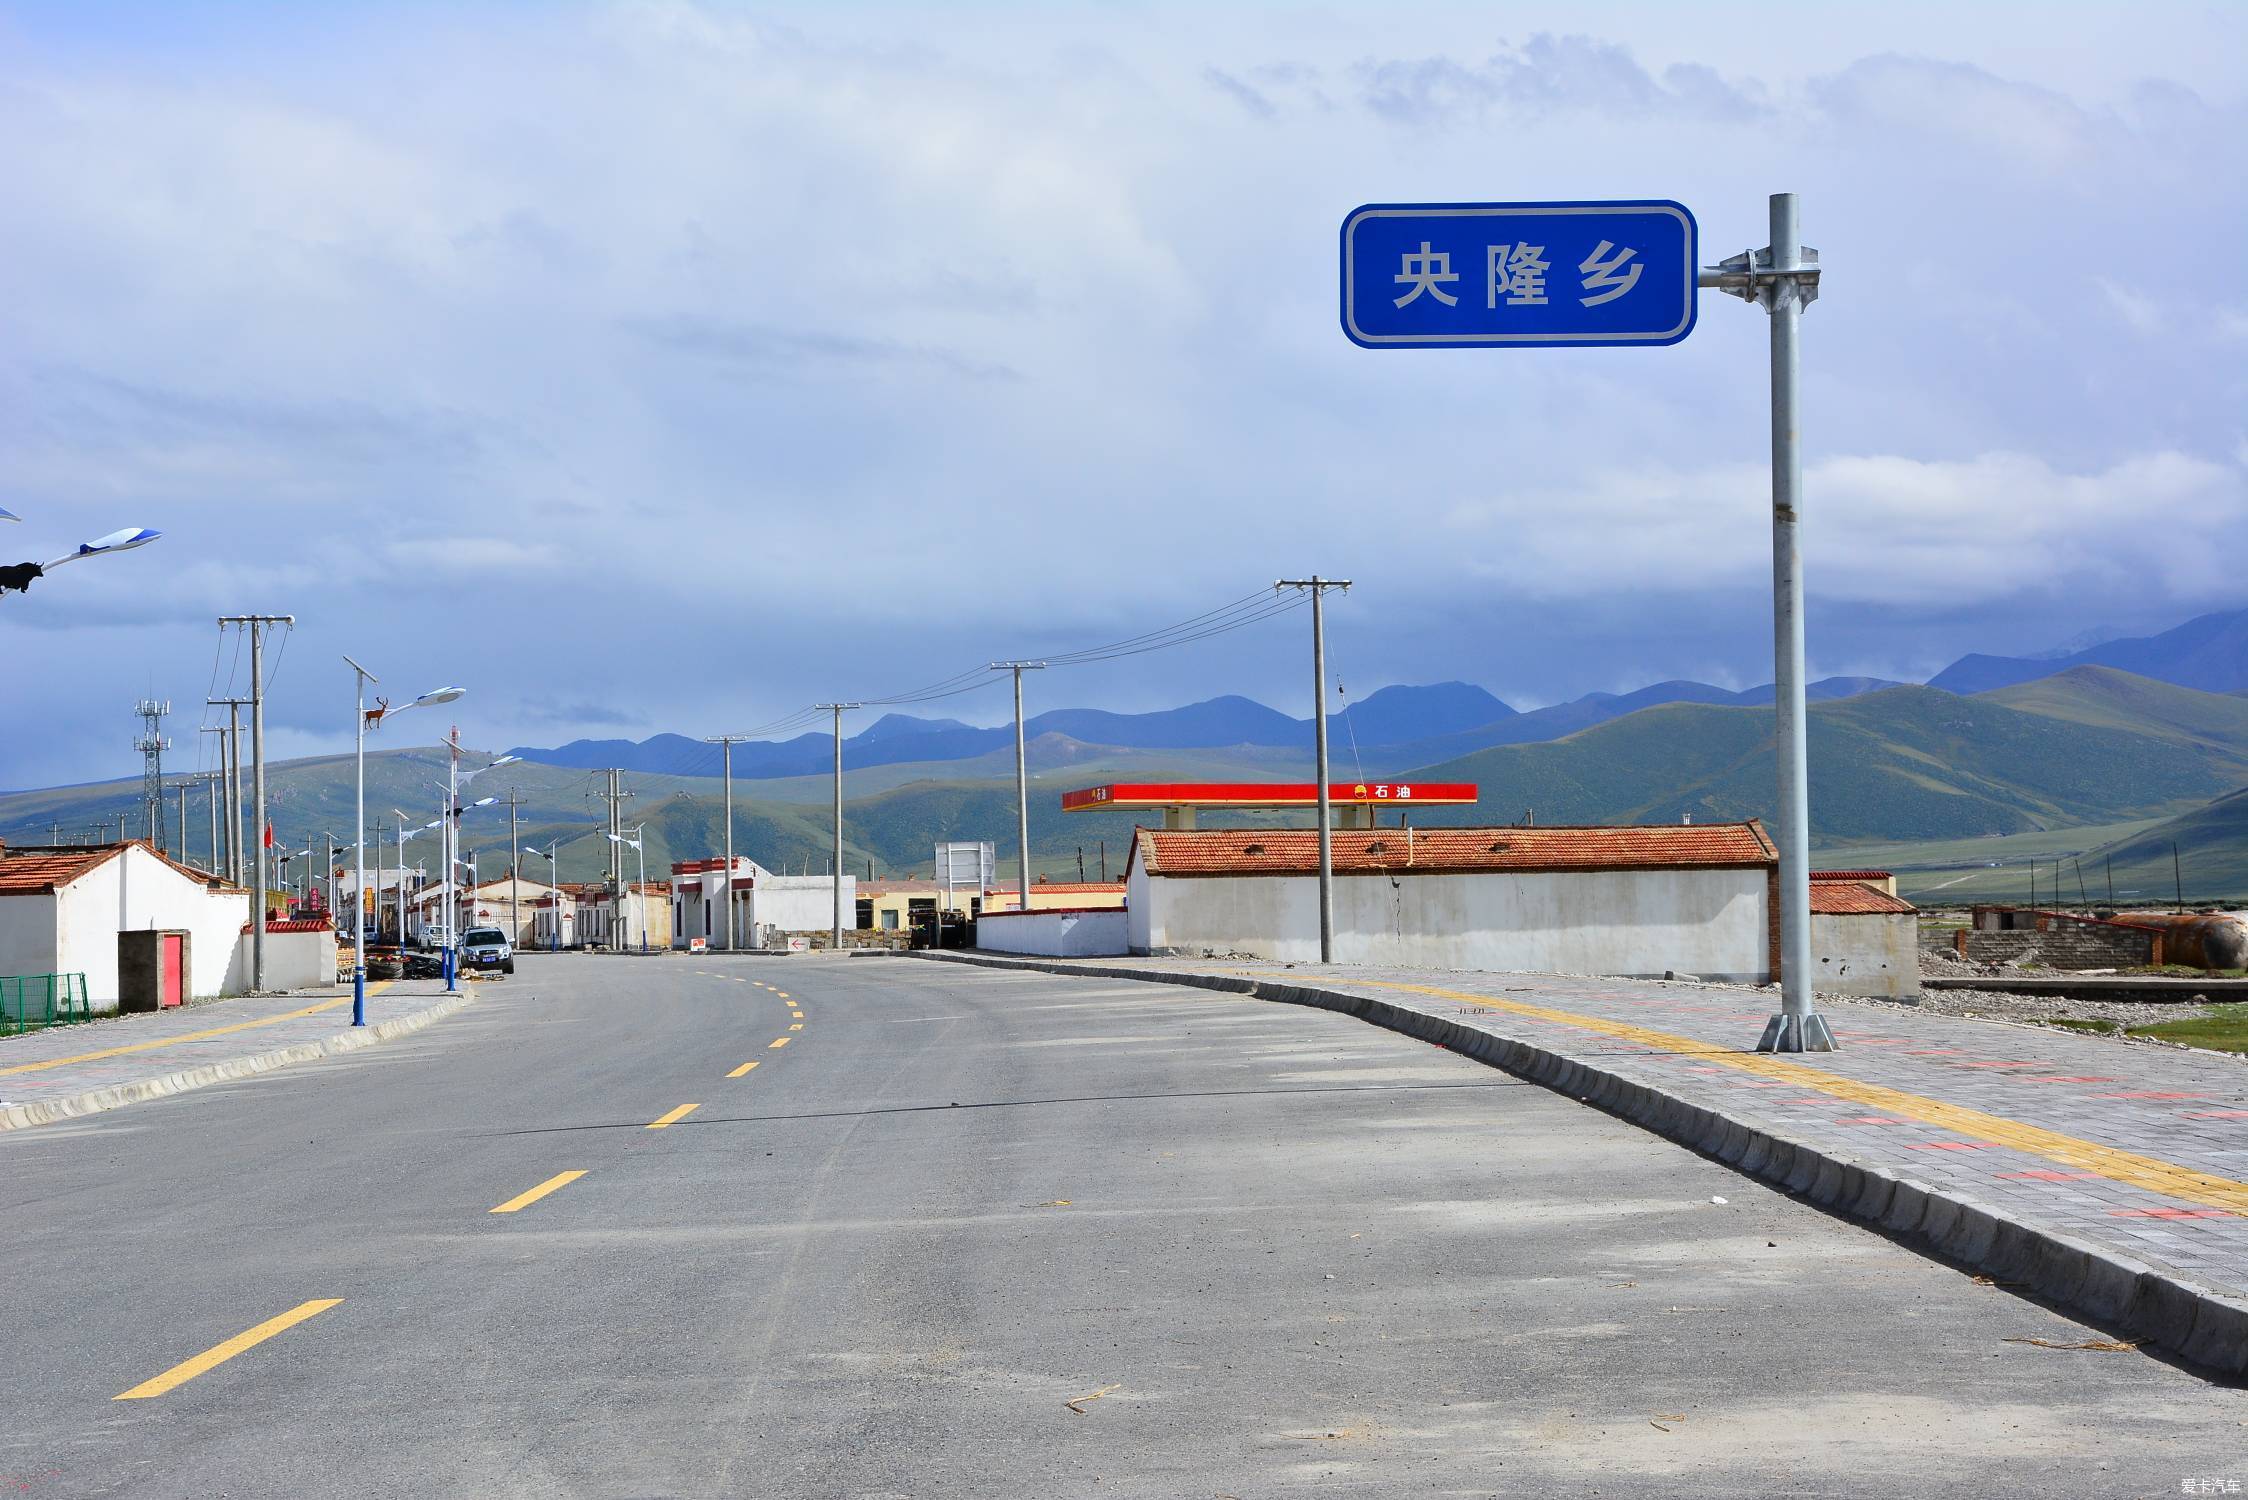 进入青海省祁连县央隆乡(青海省道s204)也叫二尕公路